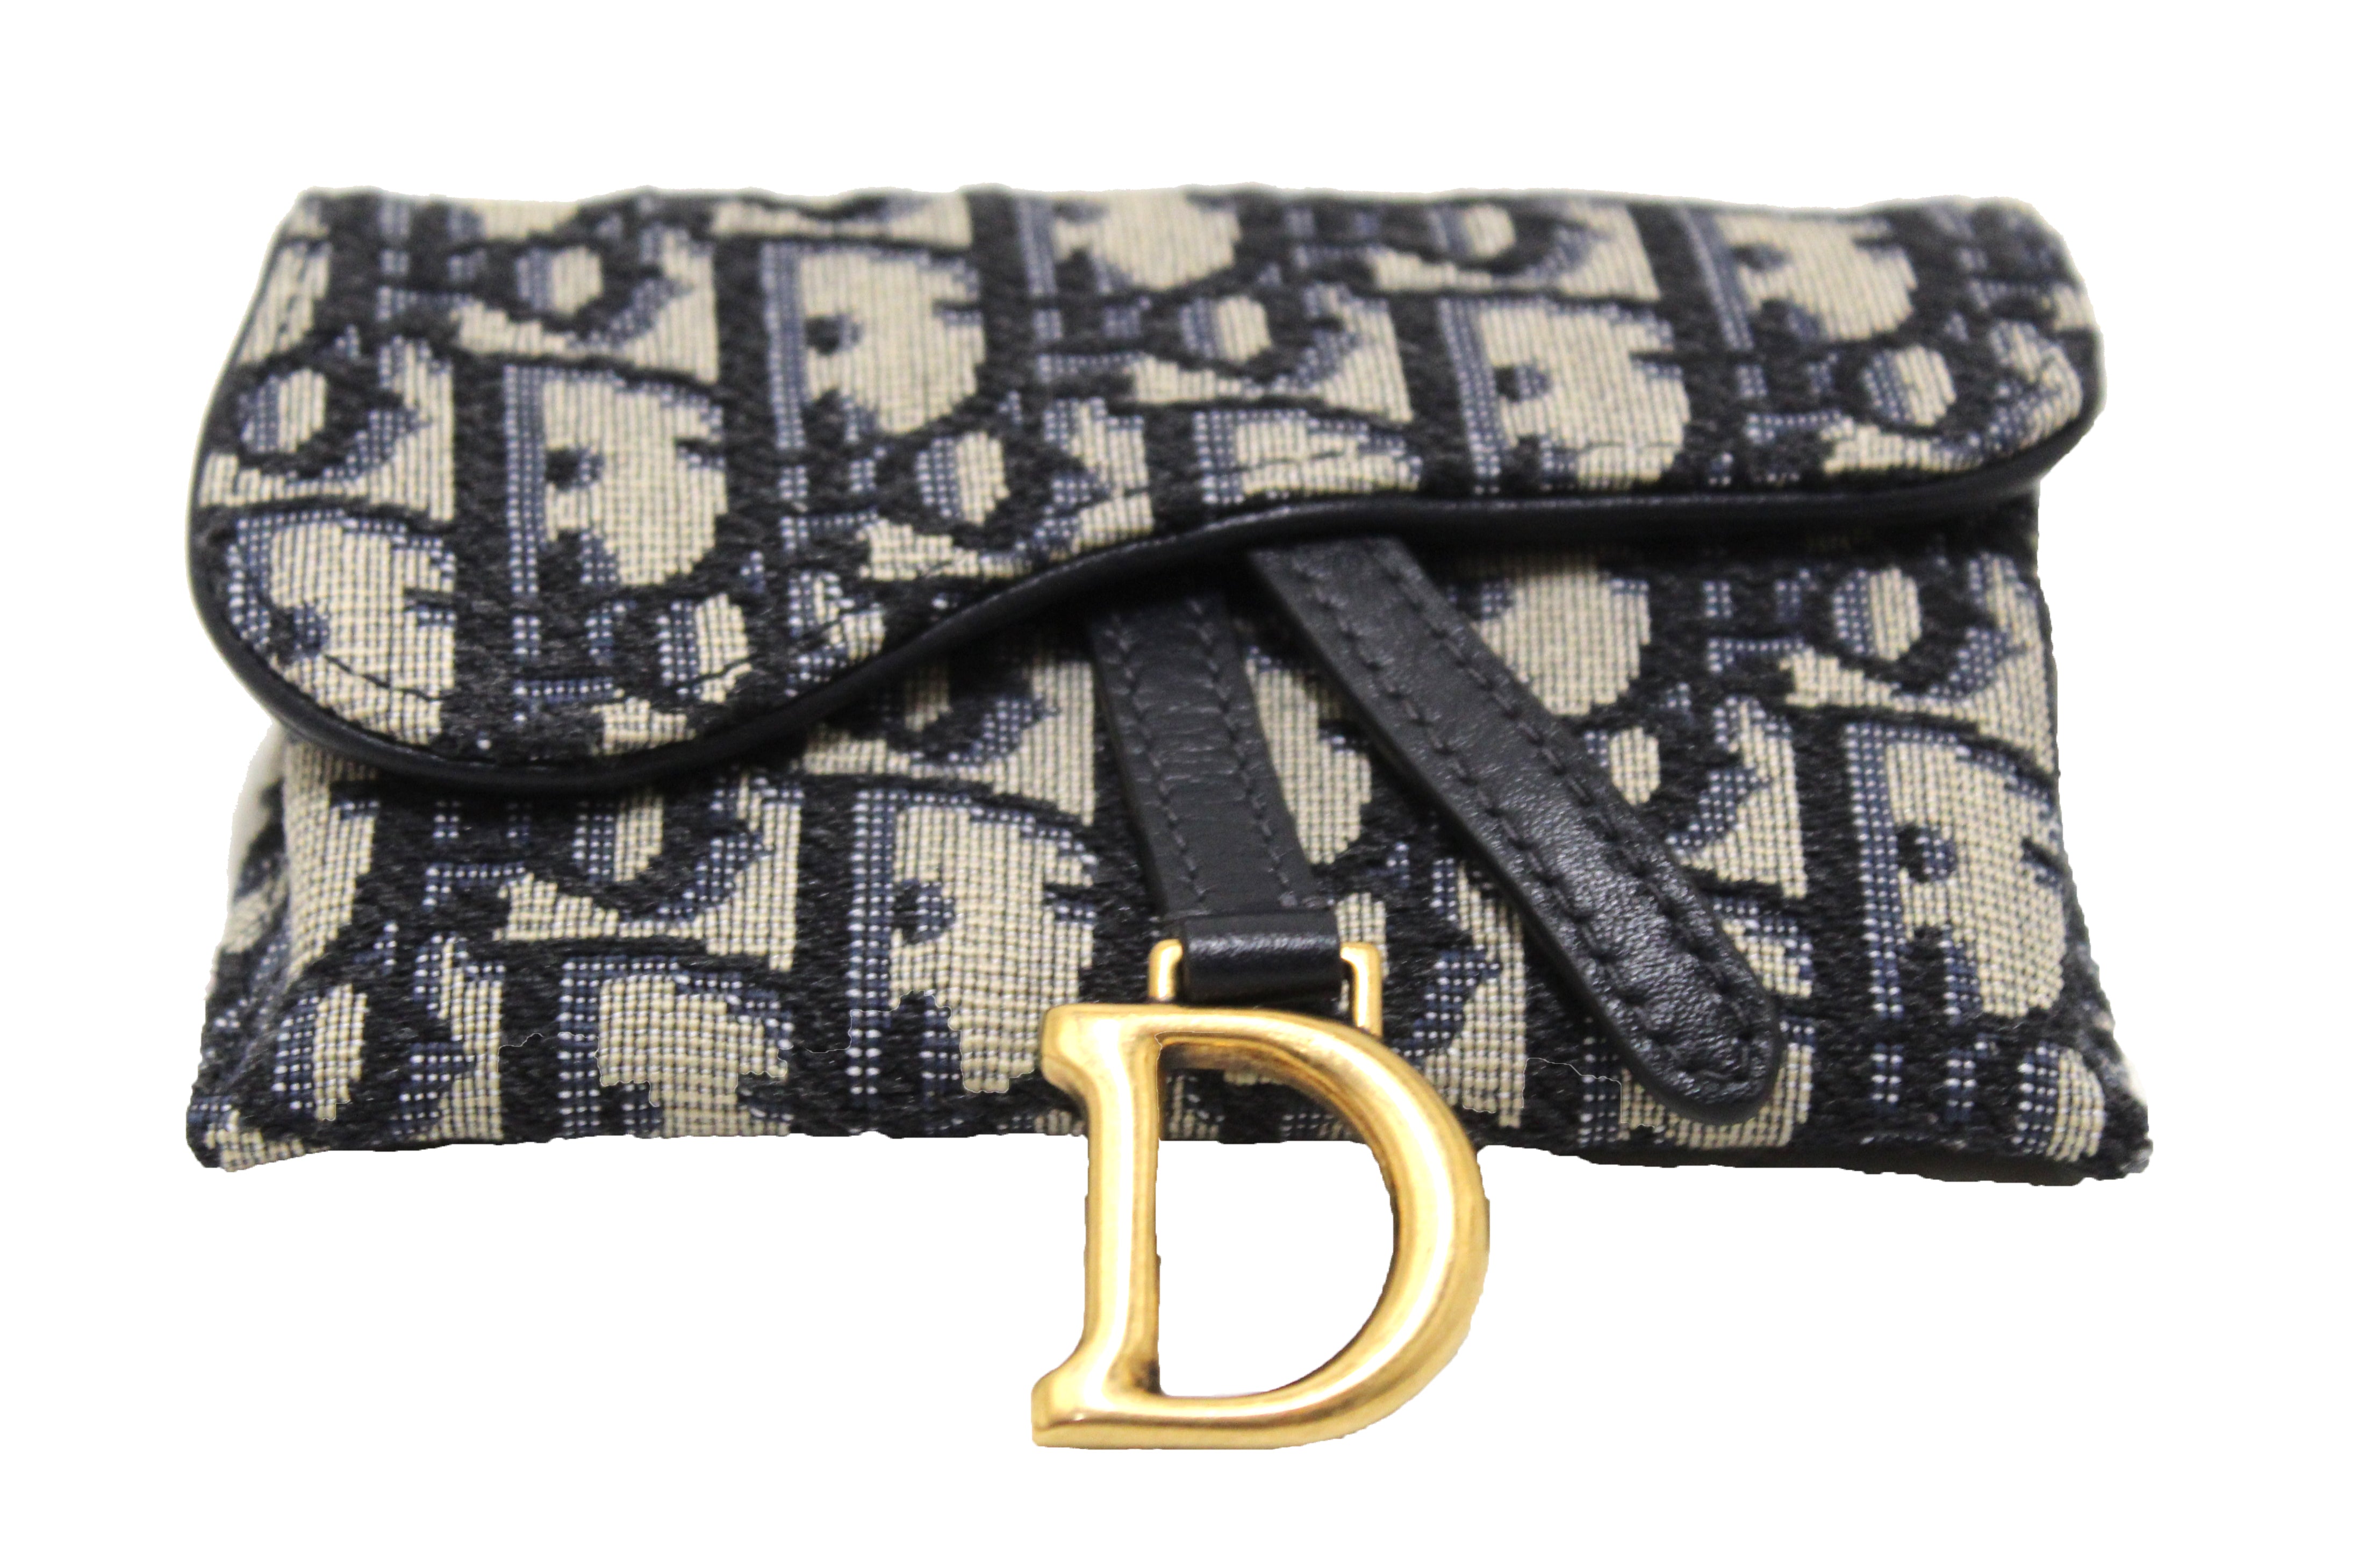 Christian Dior Oblique Nano Saddle Pouch - Neutrals Mini Bags